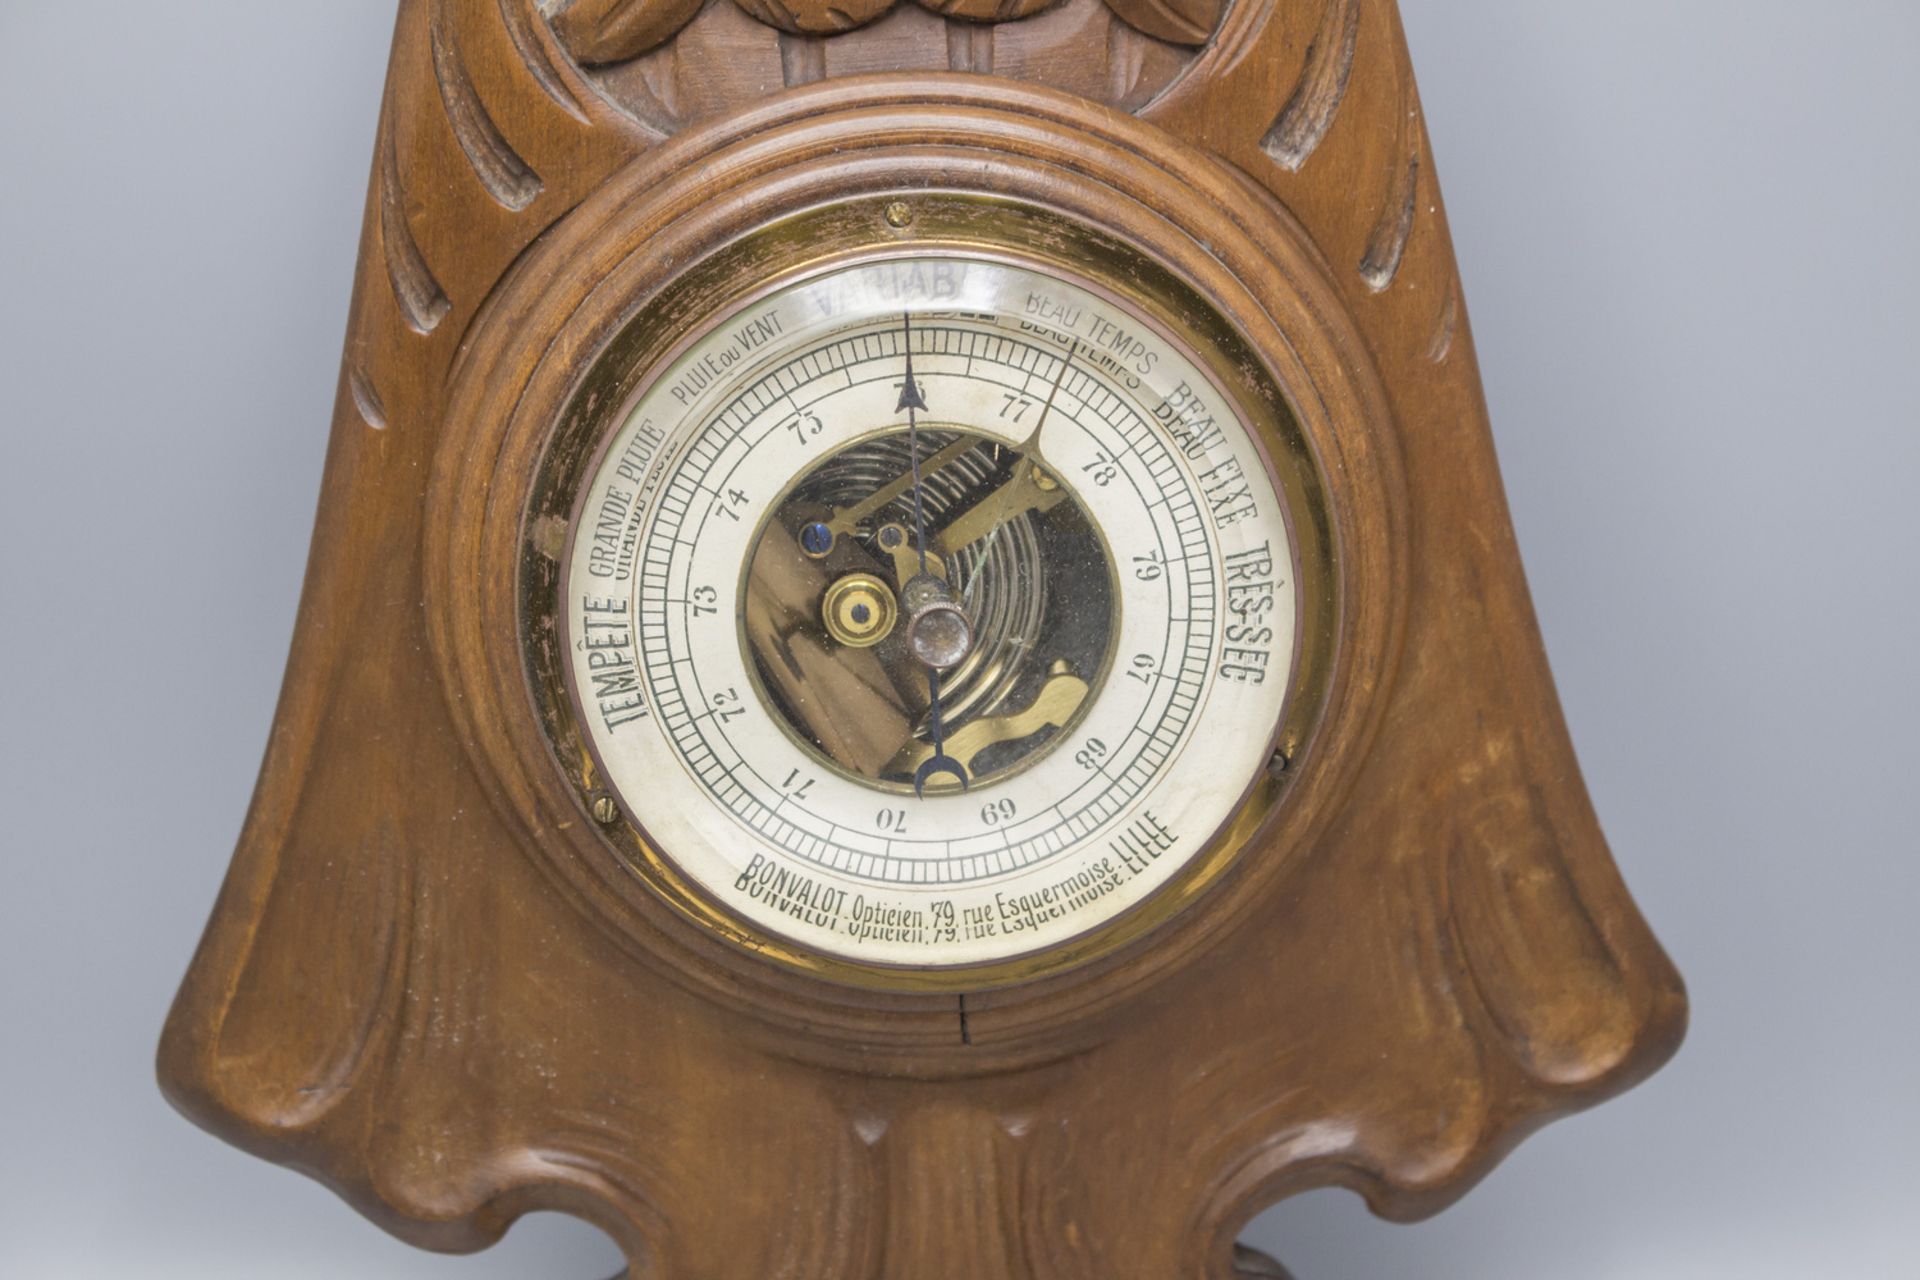 Jugendstil Barometer u. Thermometer / An Art Nouveau barometer and thermometer, Nancy, um 1900 - Image 2 of 3